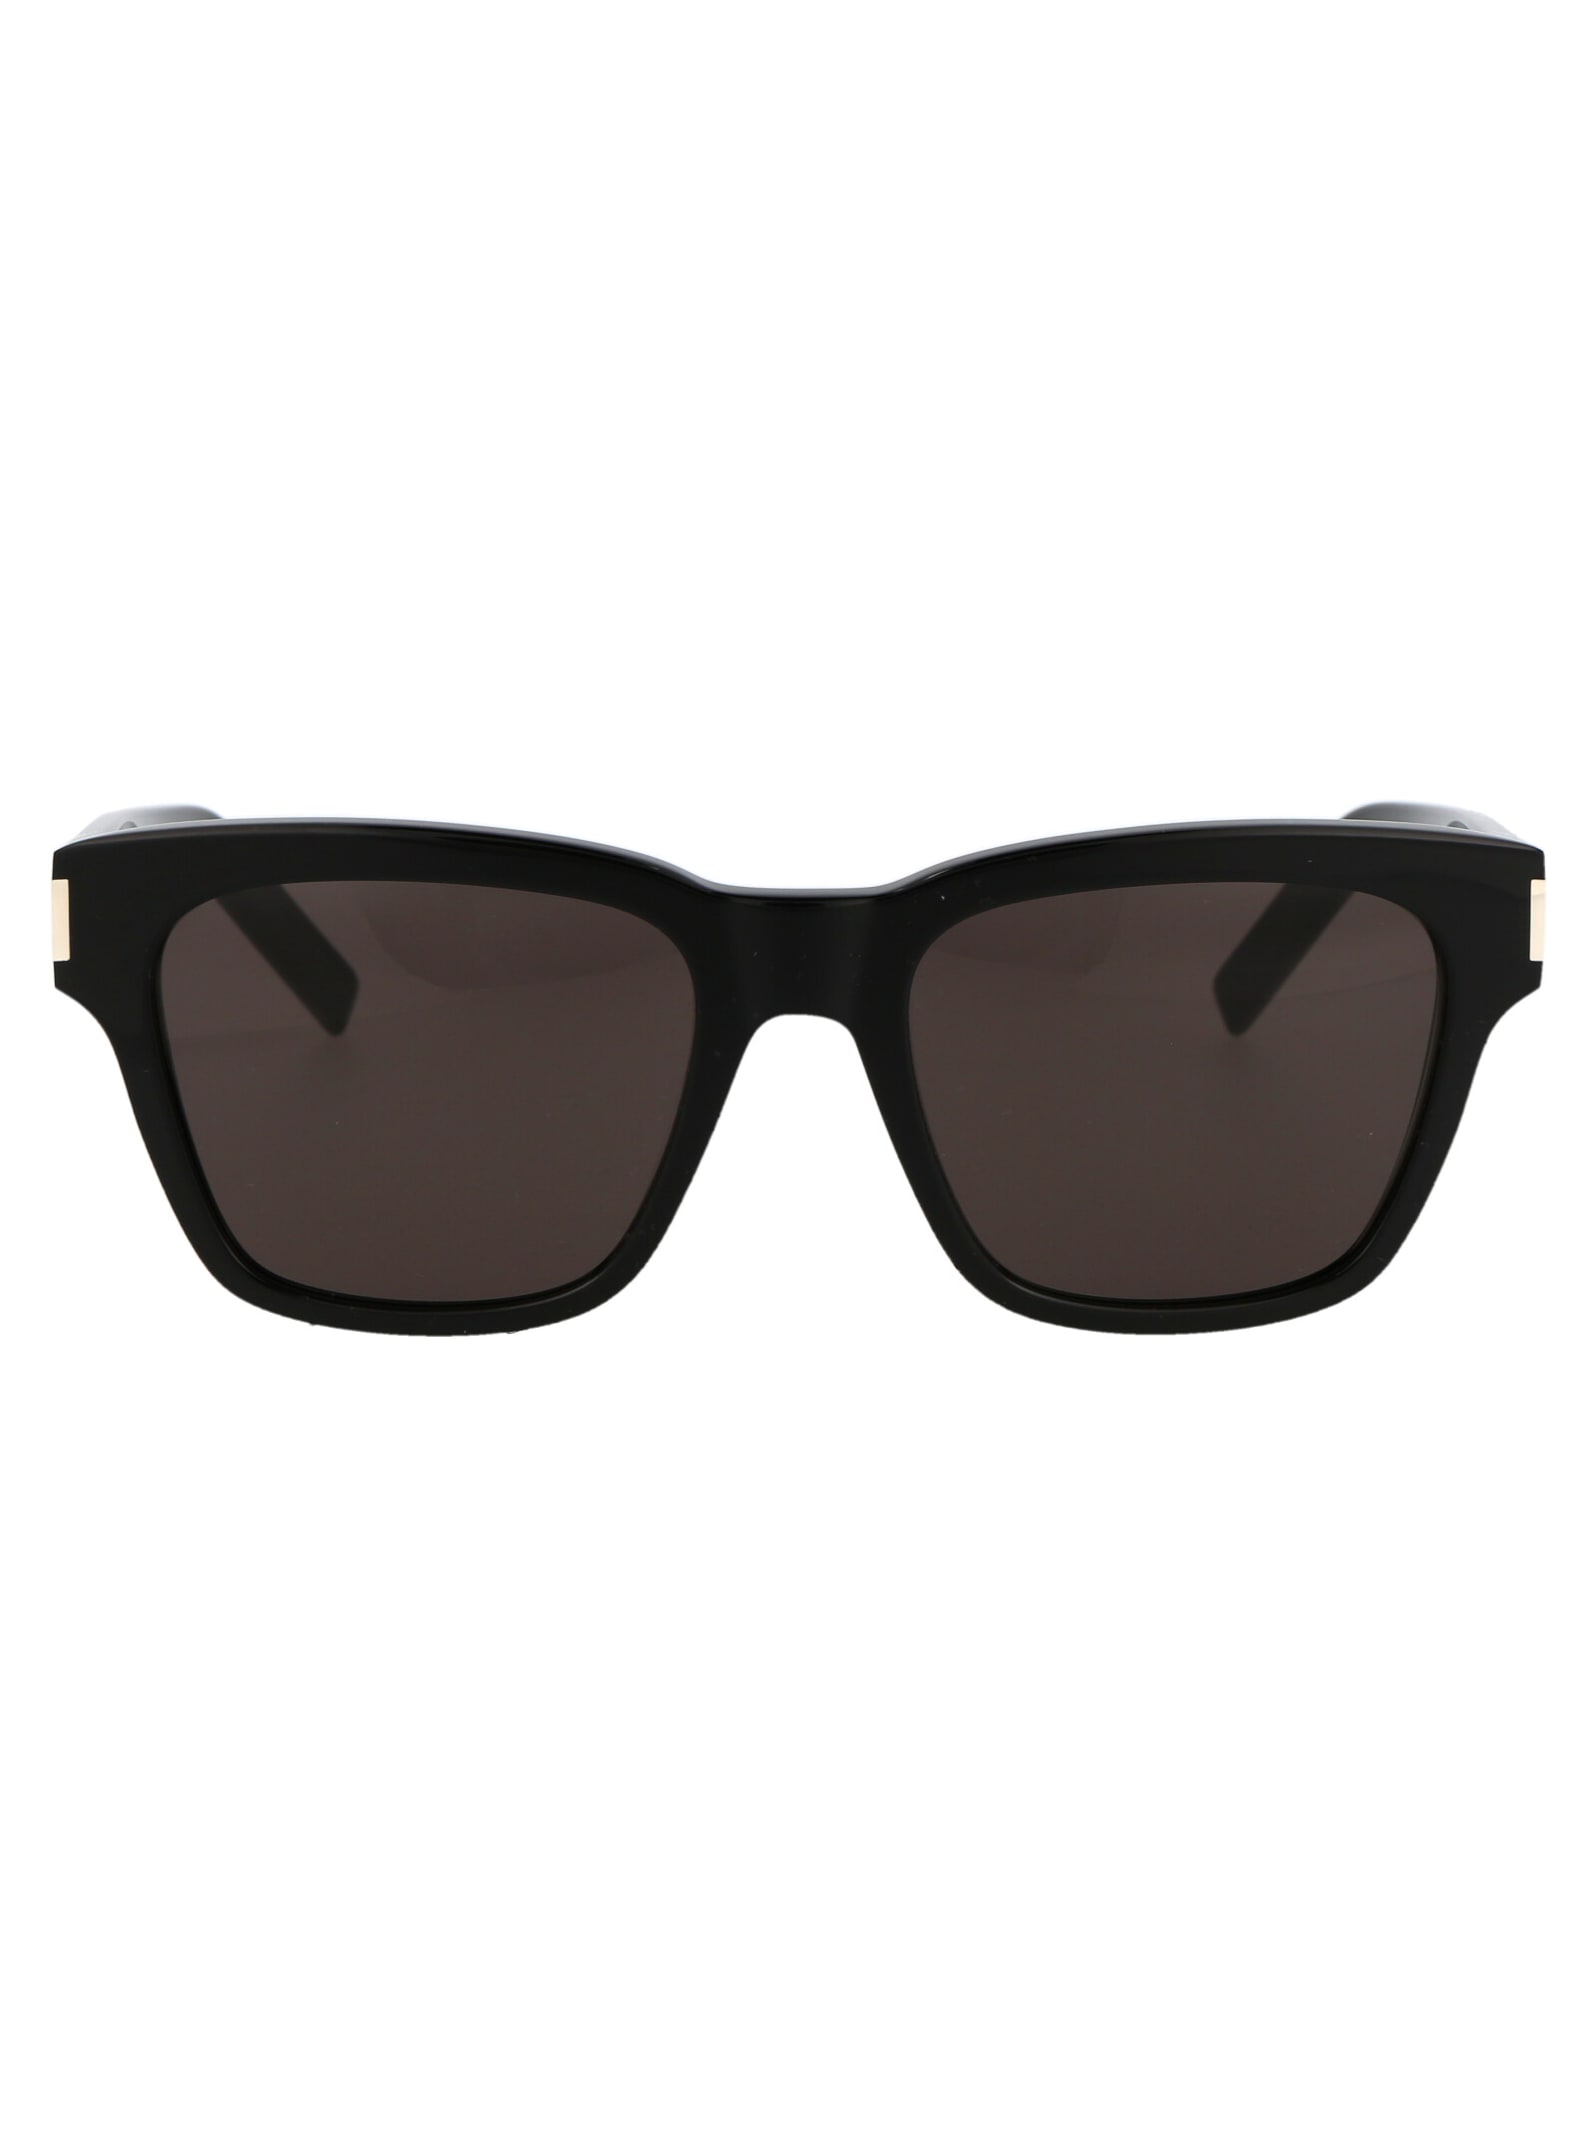 Saint Laurent Eyewear Sl 560 Sunglasses